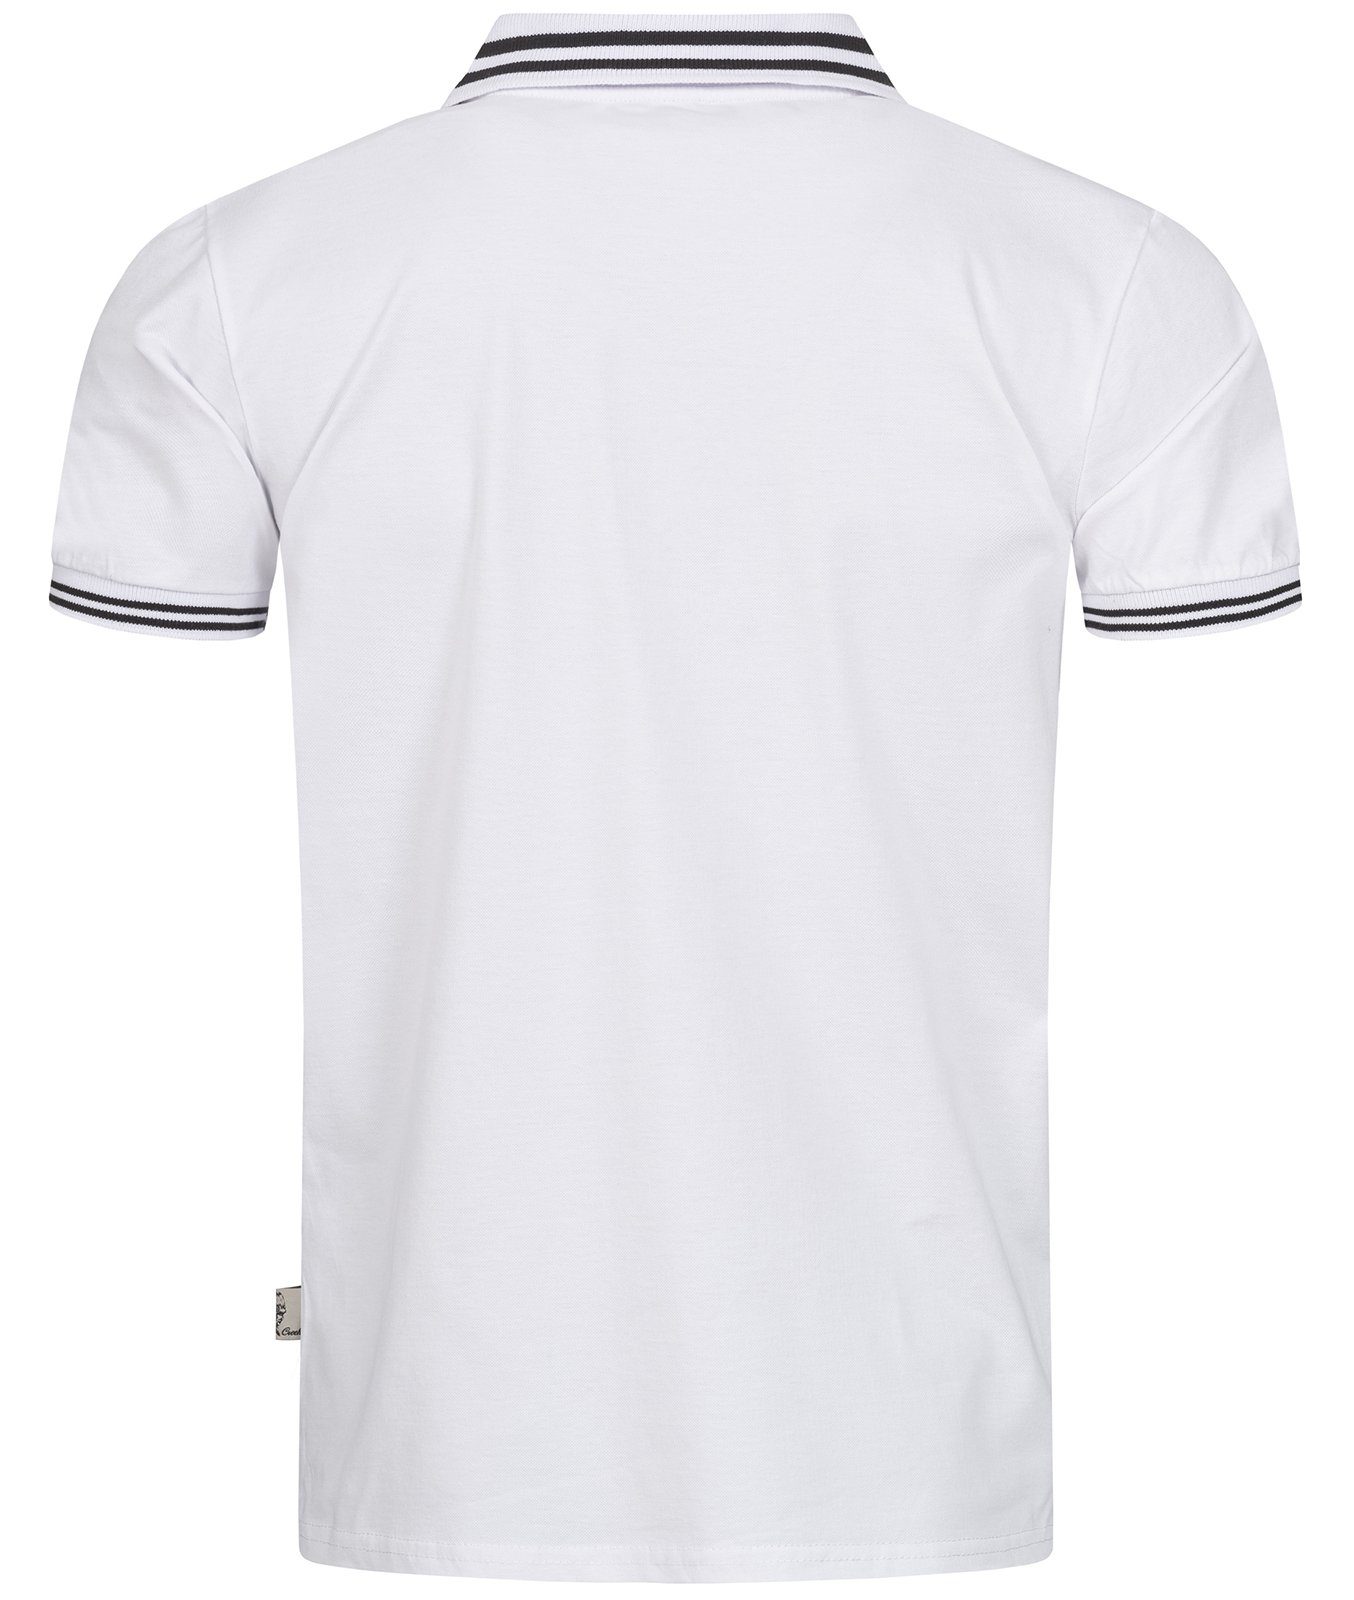 Rock Creek Poloshirt Herren H-283 Weiß-Schwarz mit Polokragen T-Shirt